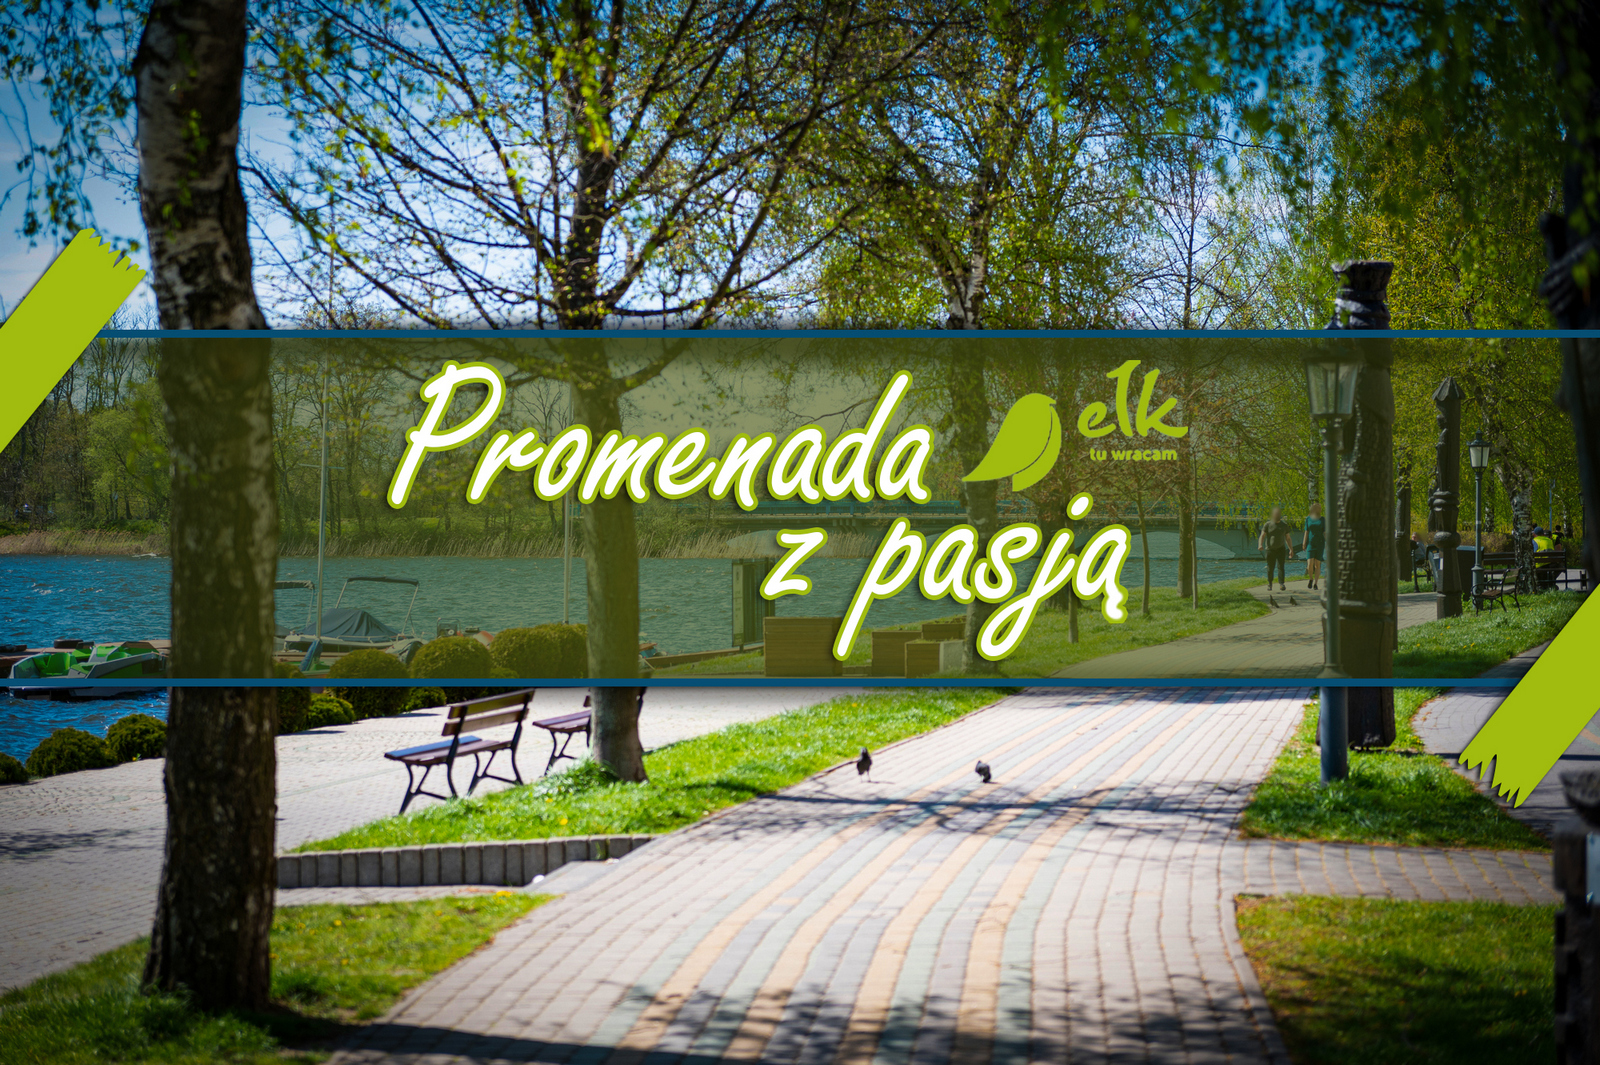 "Promenade mit Leidenschaft" - Künstler und Kulturschaffende können sich auf der Ełker Promenade präsentieren